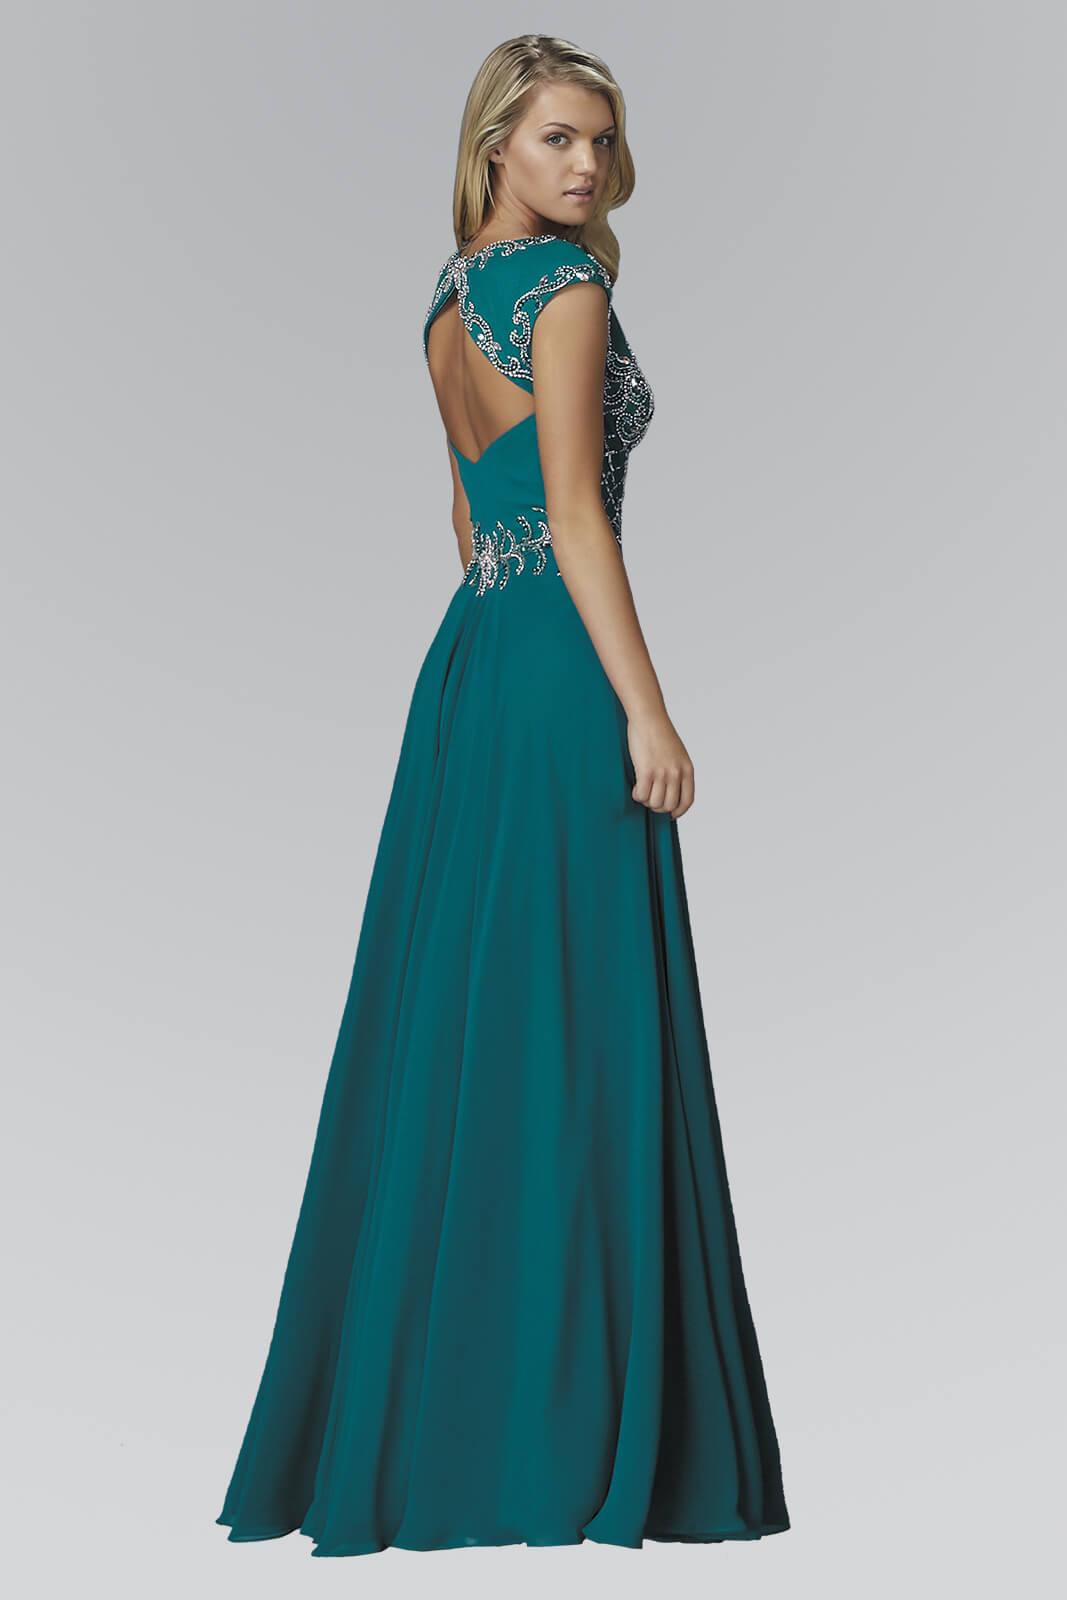 Long Prom Dress Formal Evening Gown - The Dress Outlet Elizabeth K